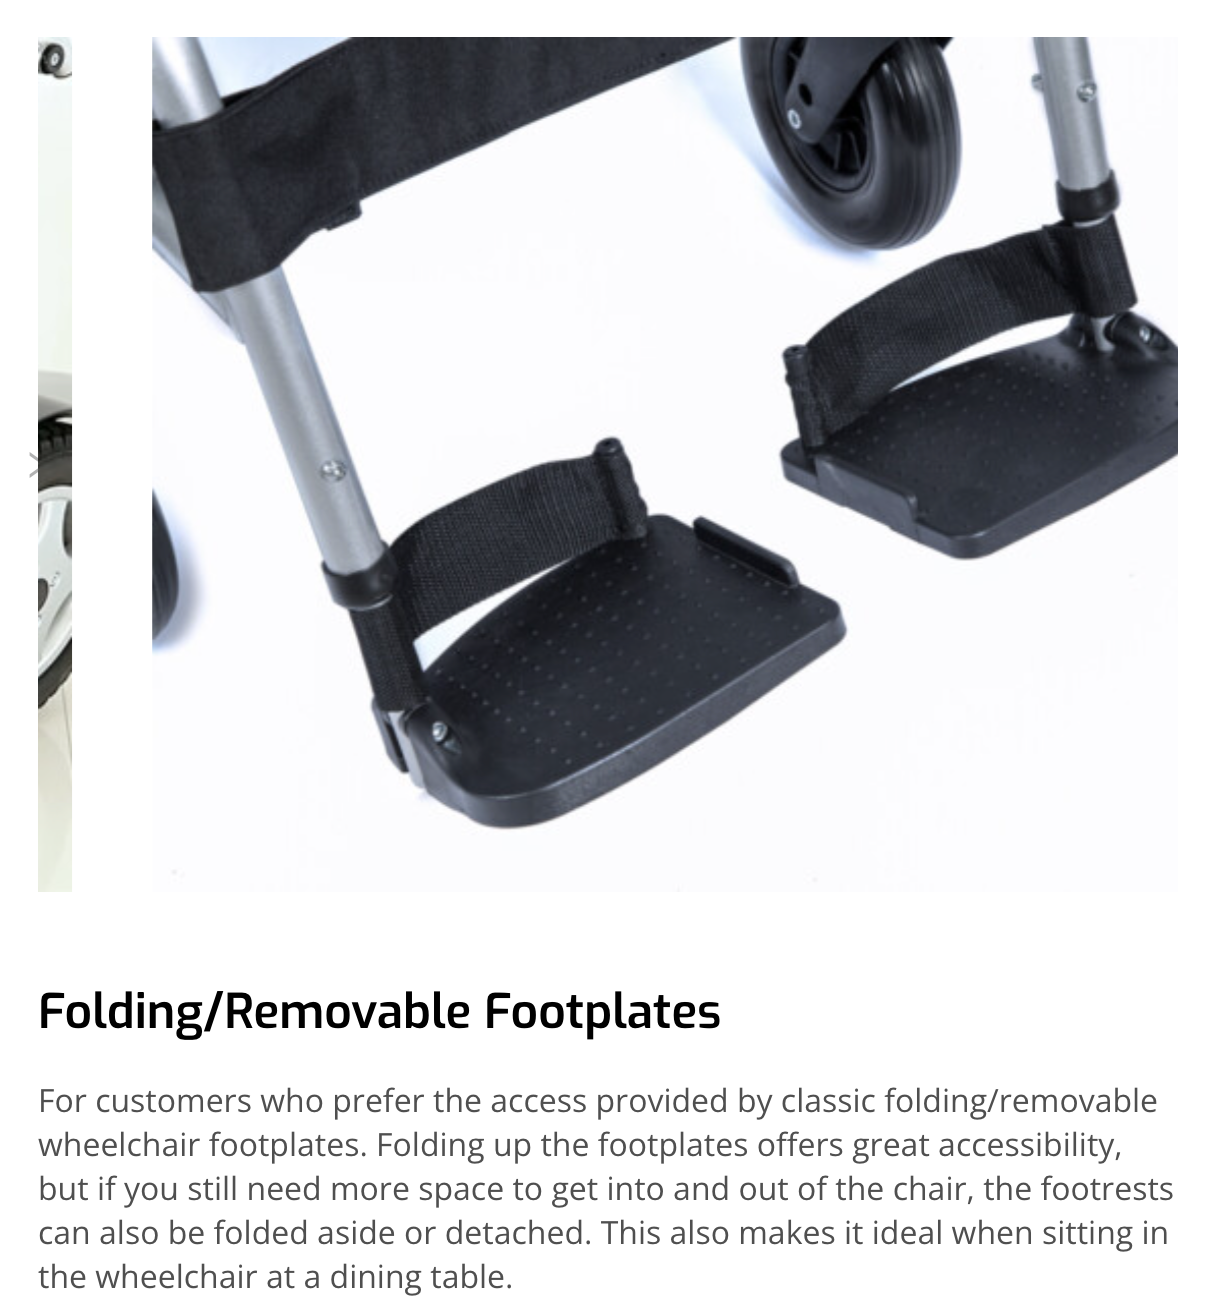 Freedom Chair T3 by e-goes. Cross-brace Folding